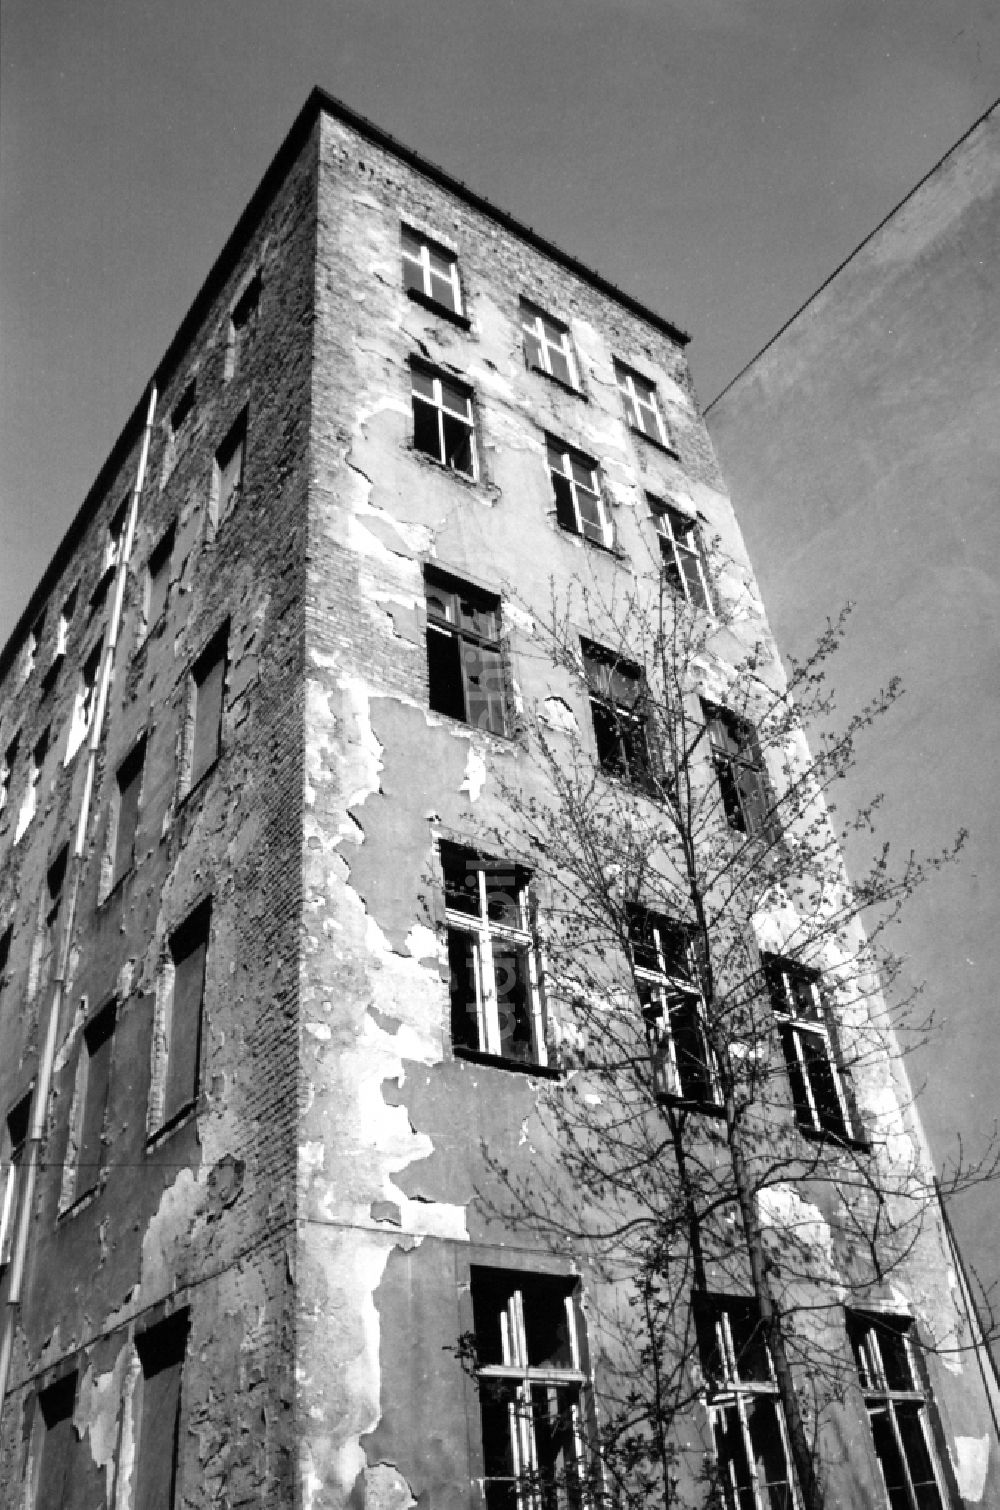 DDR-Fotoarchiv: Berlin - Altbau - Mehrfamilienwohnhaus mit verfallener Fassade im Ortsteil Prenzlauer Berg in Berlin, der ehemaligen Hauptstadt der DDR, Deutsche Demokratische Republik